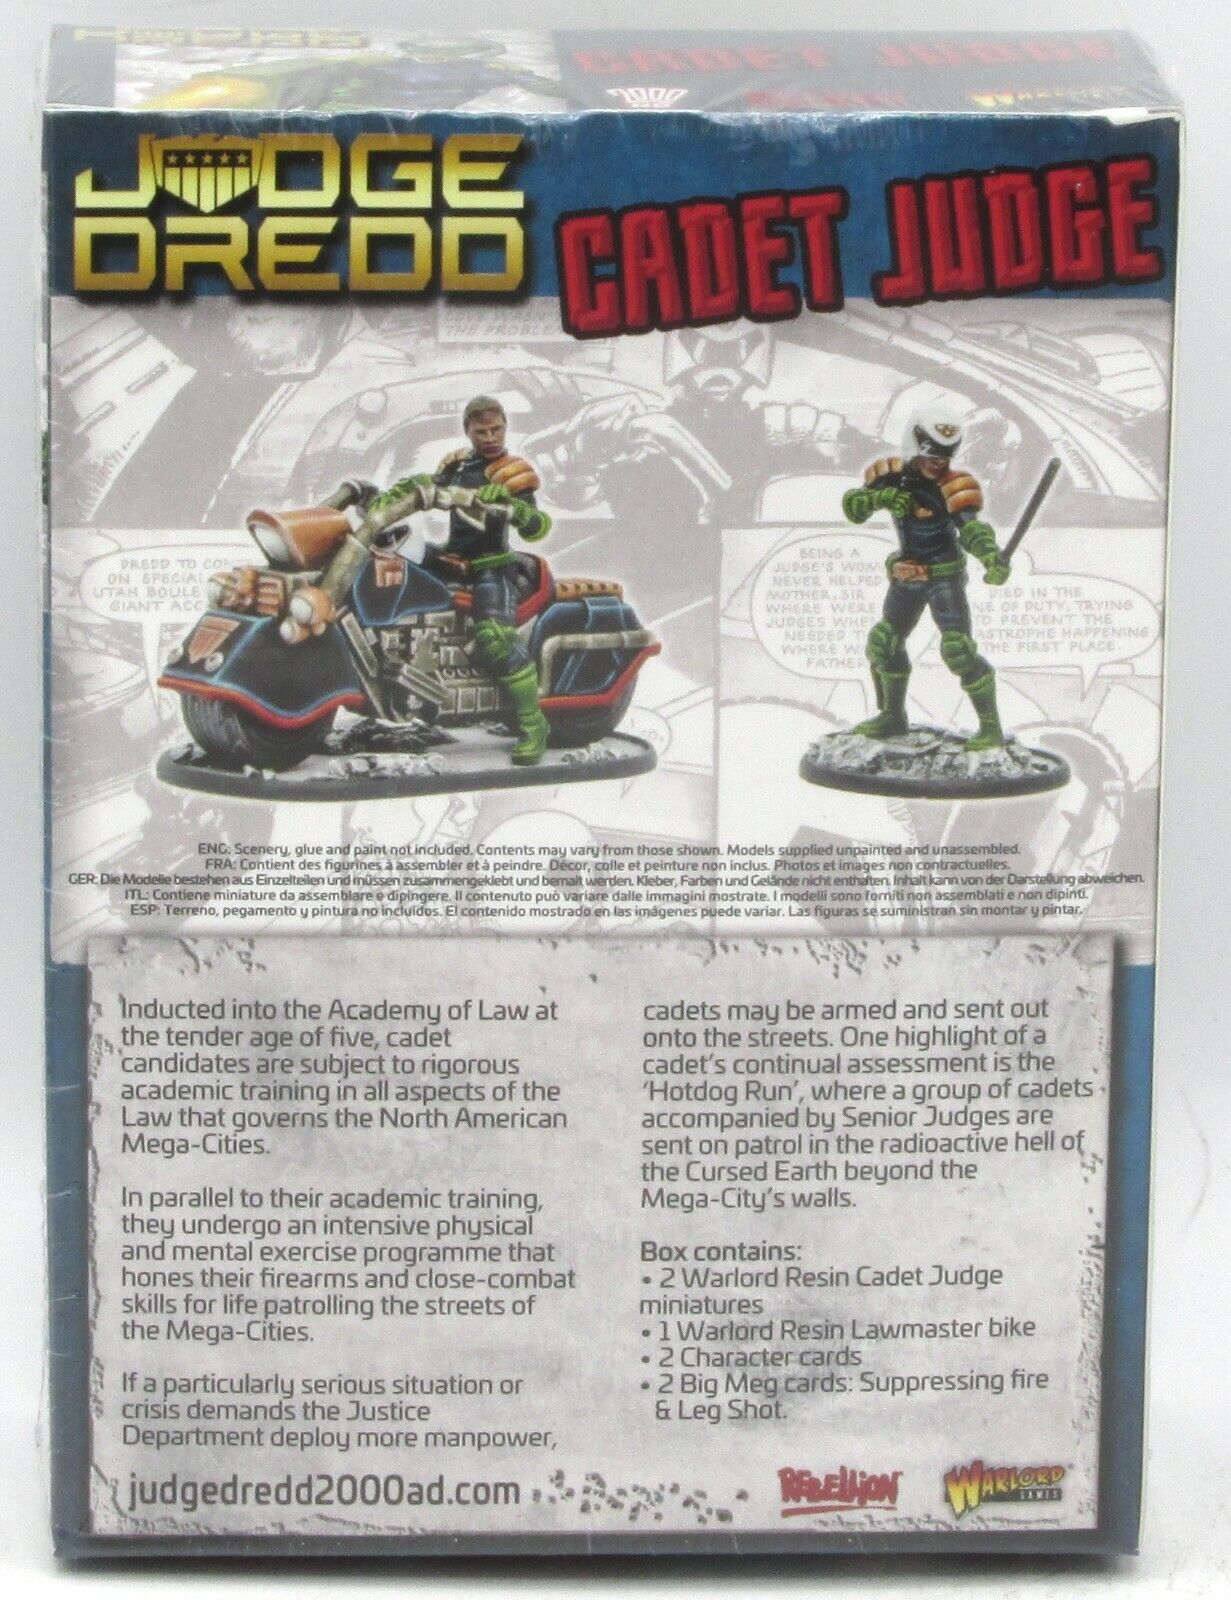 Dredd Cadet Judge